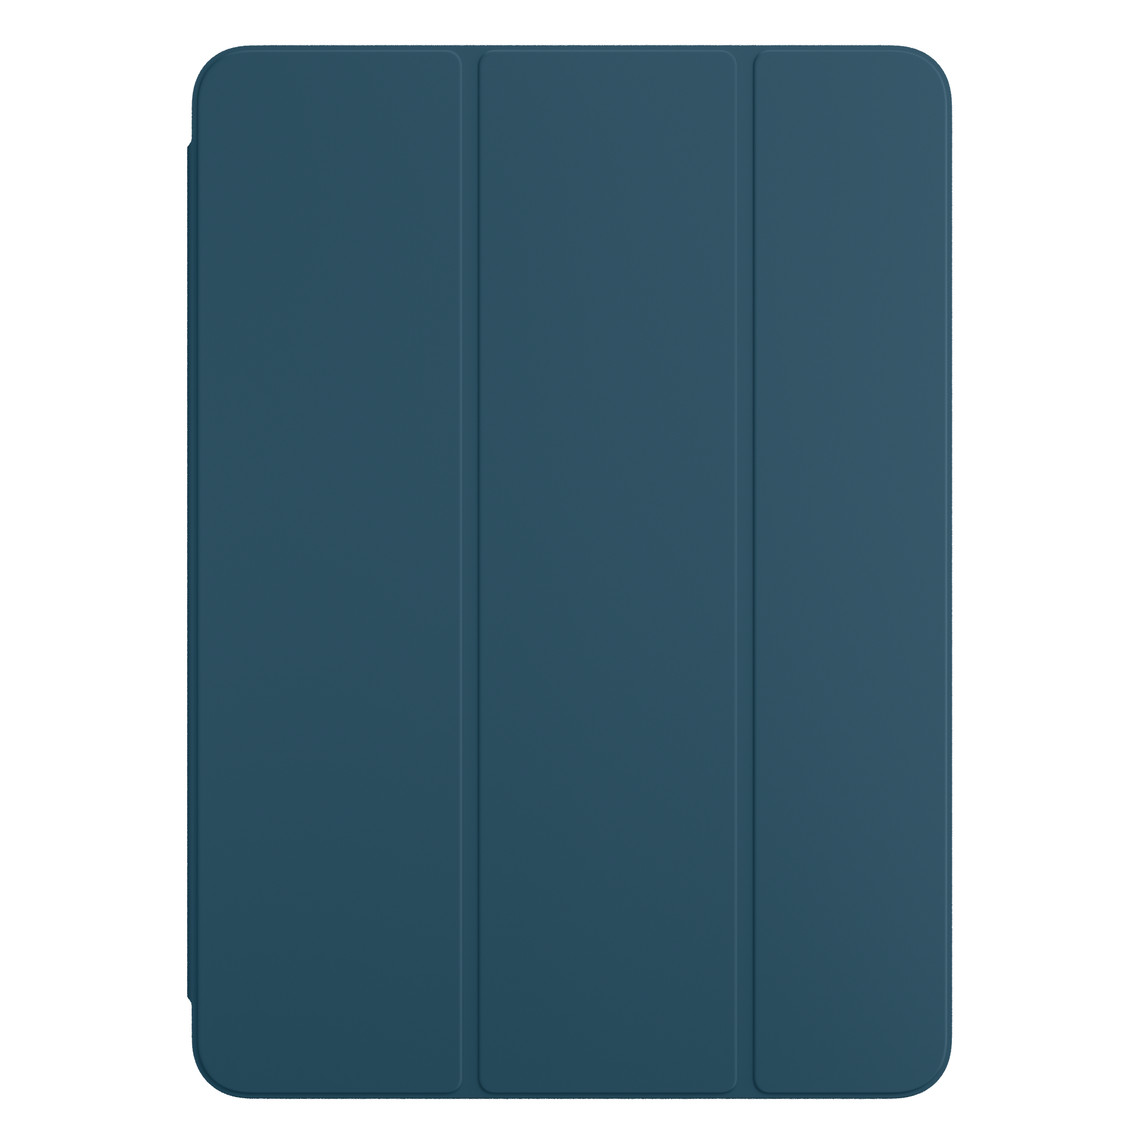 Vorderansicht des Smart Folio für iPad Pro in Marineblau.